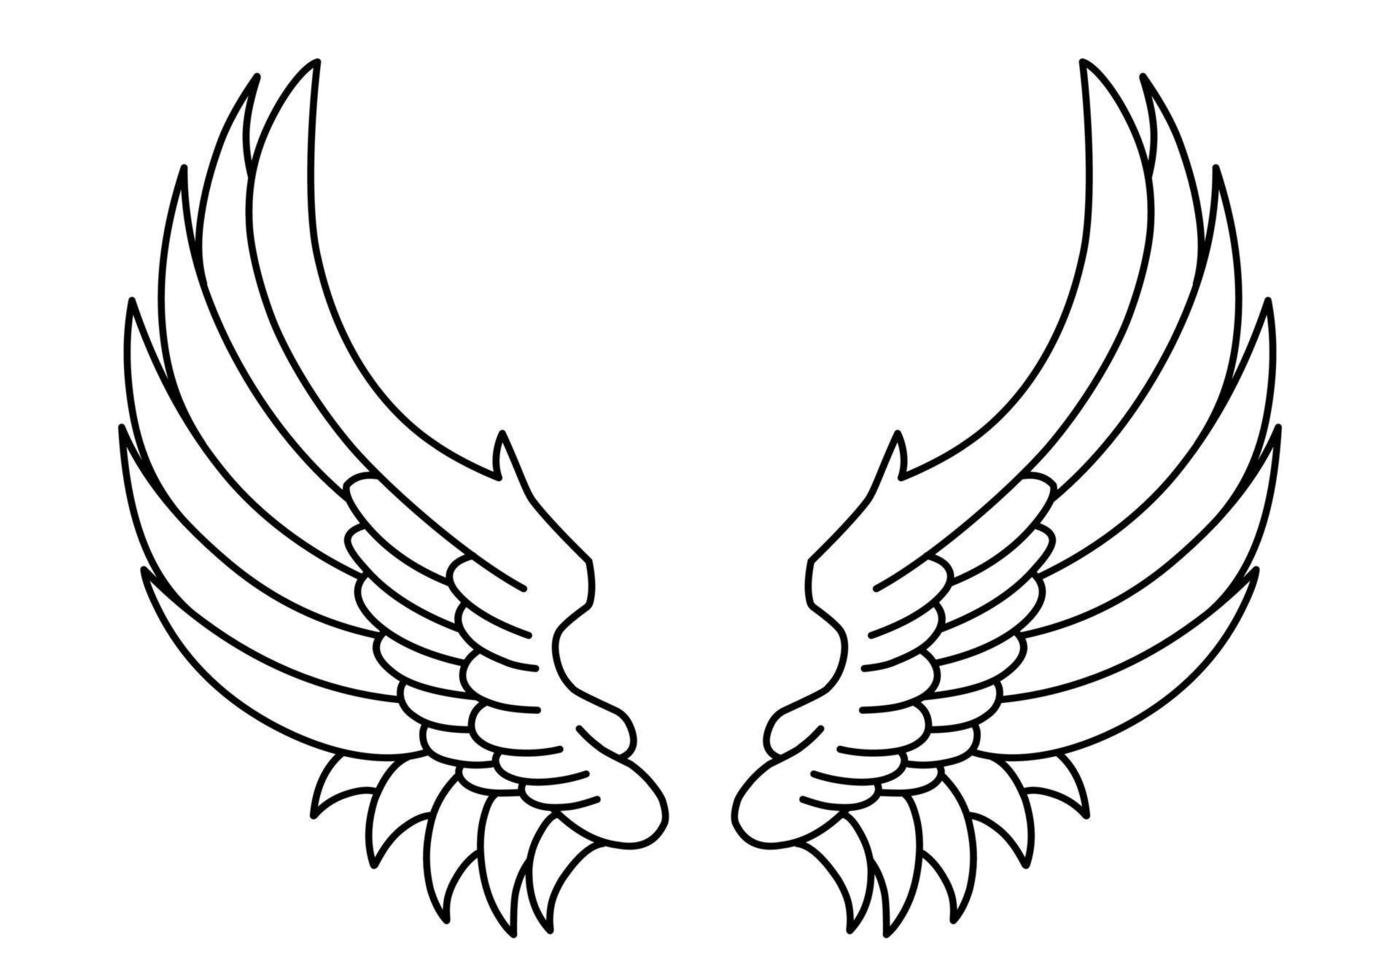 ilustração de tatuagem de asas de anjo tribal vetor